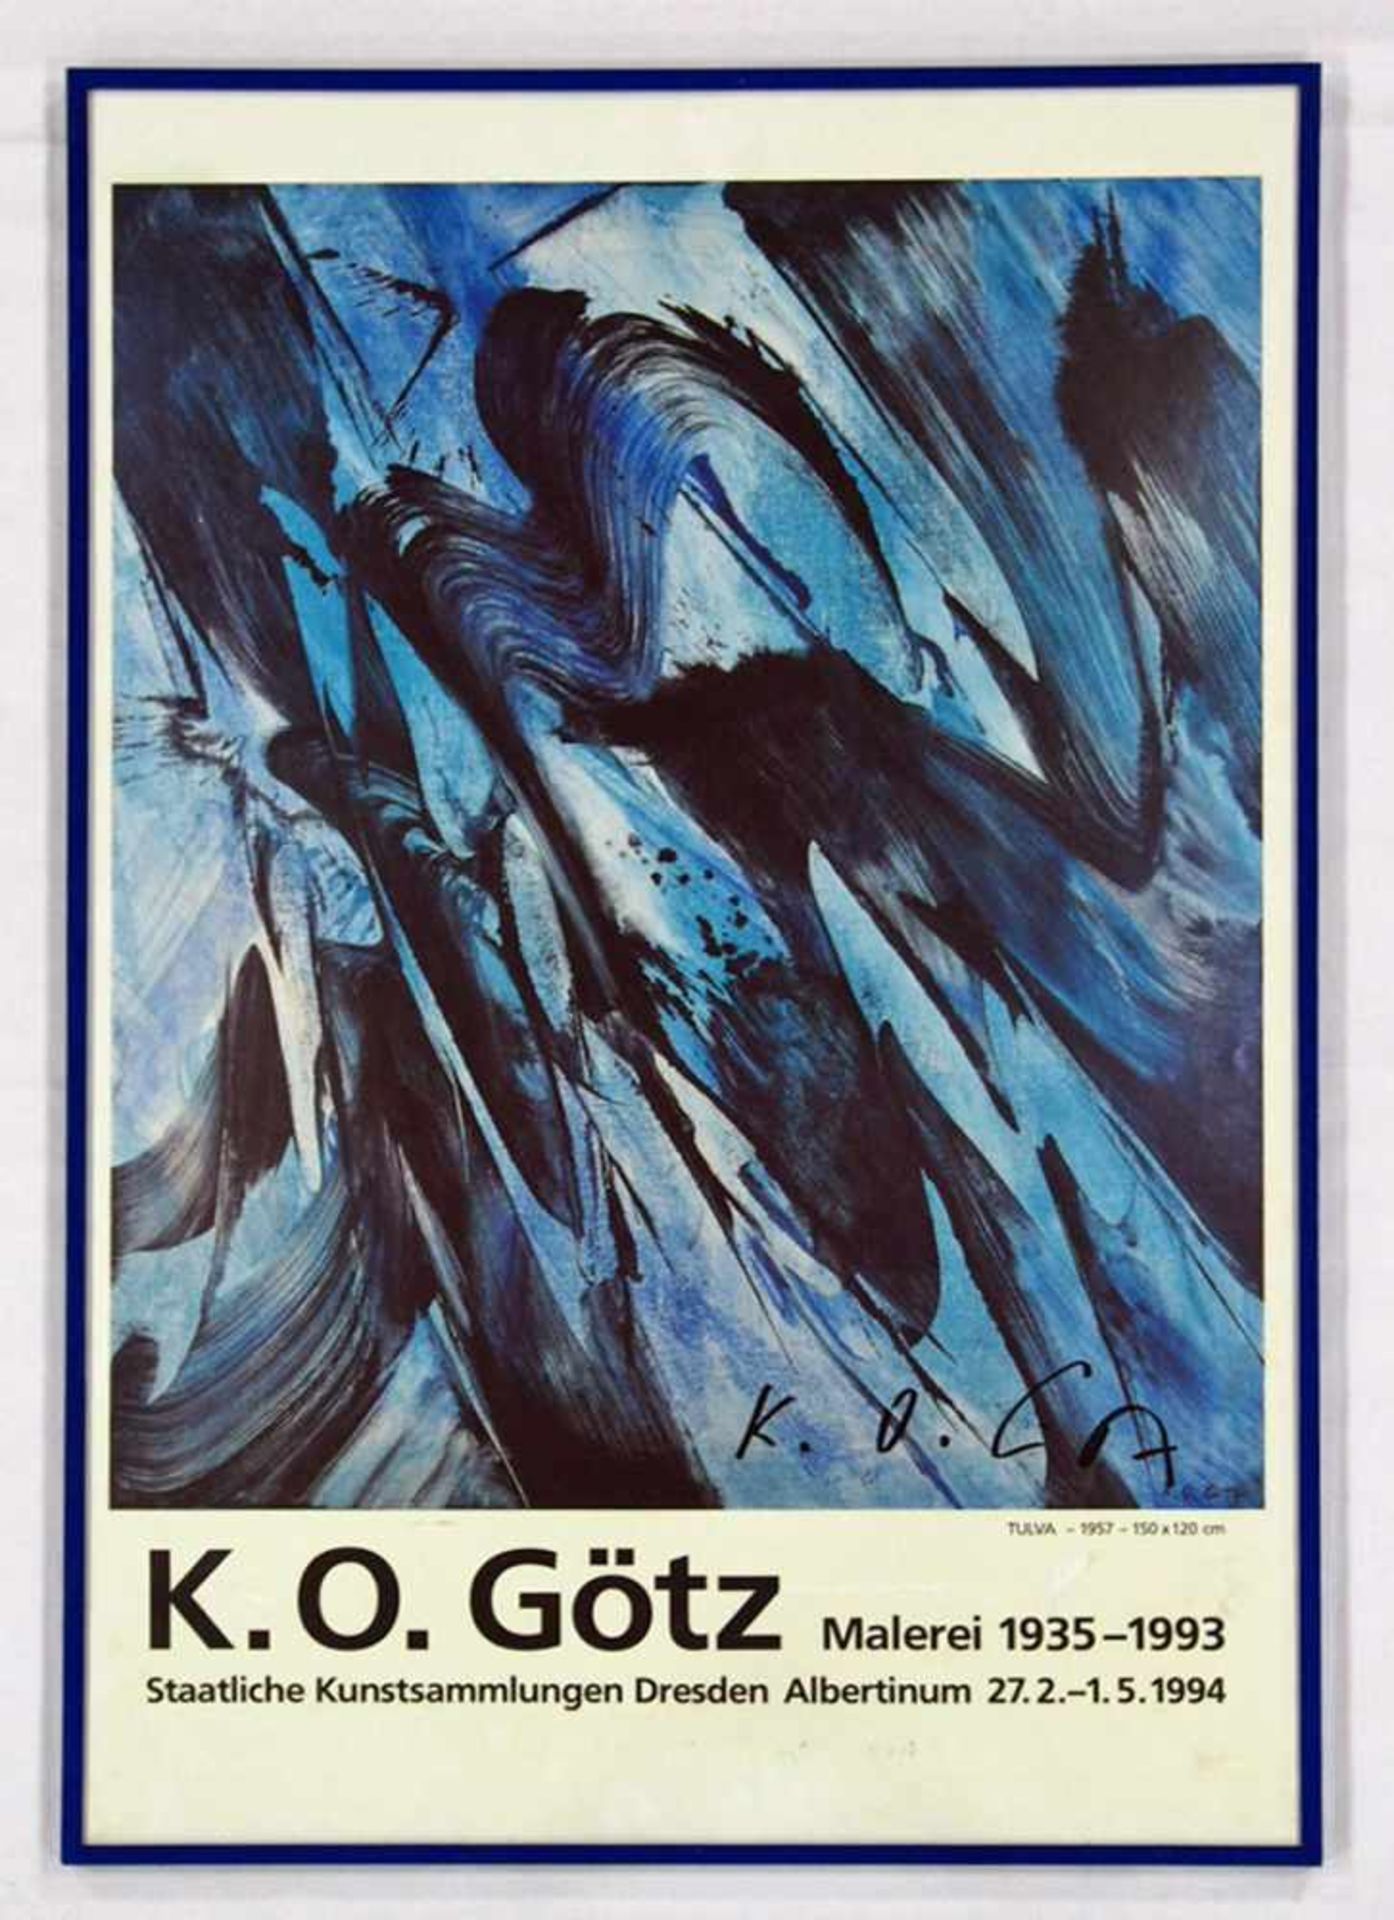 GÖTZ, Karl Otto*1914-2017Ausstellungsplakat Dresden 1994Farboffset, signiert, 87 x 59 cm, gerahmt